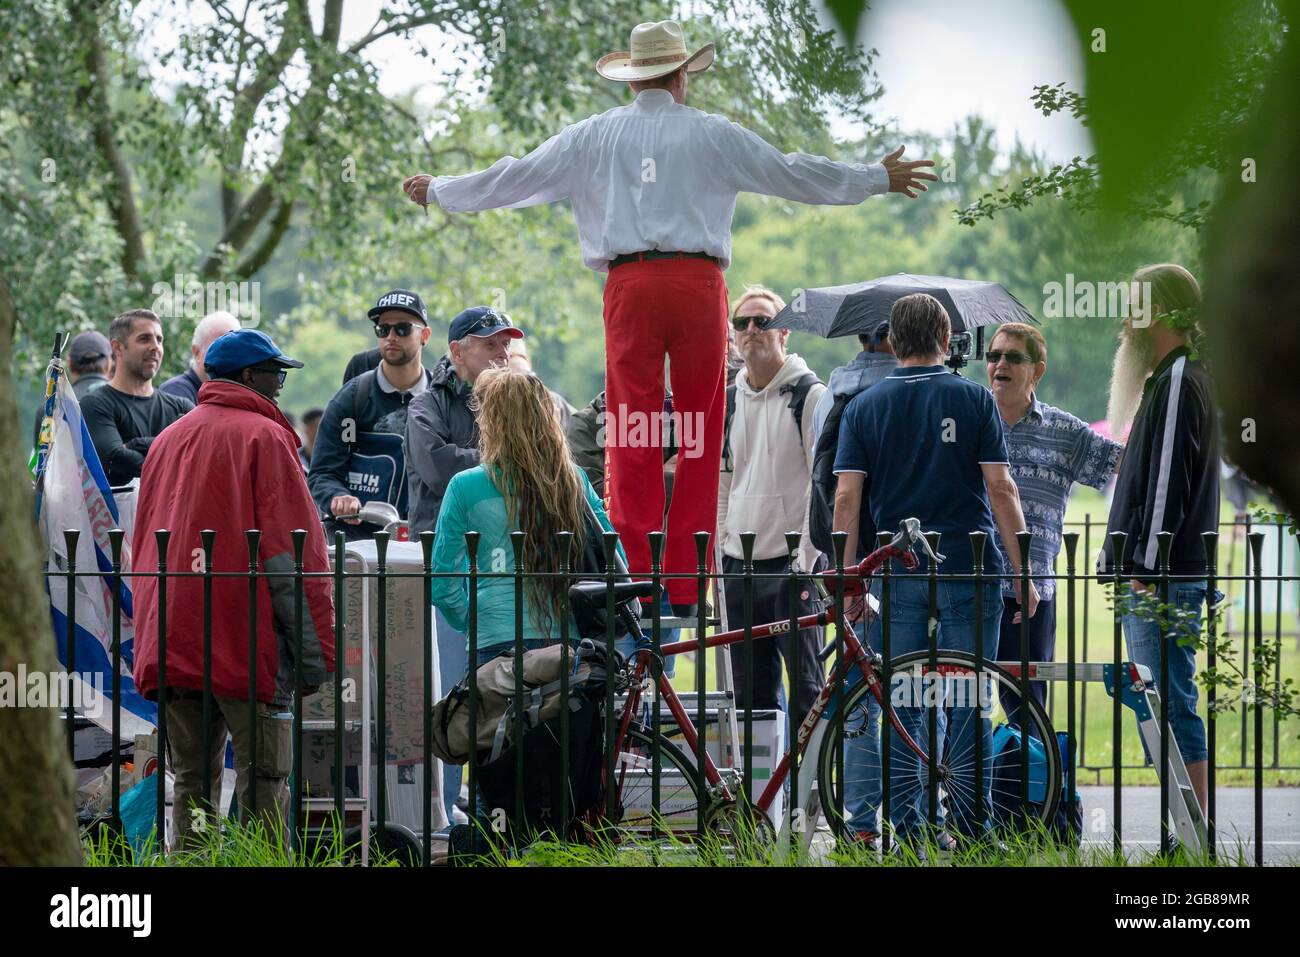 Los debates y discursos se reanudan en Speakers' Corner en Hyde Park la semana después de un presunto ataque islamista contra un predicador cristiano regular. Londres, Reino Unido. Foto de stock